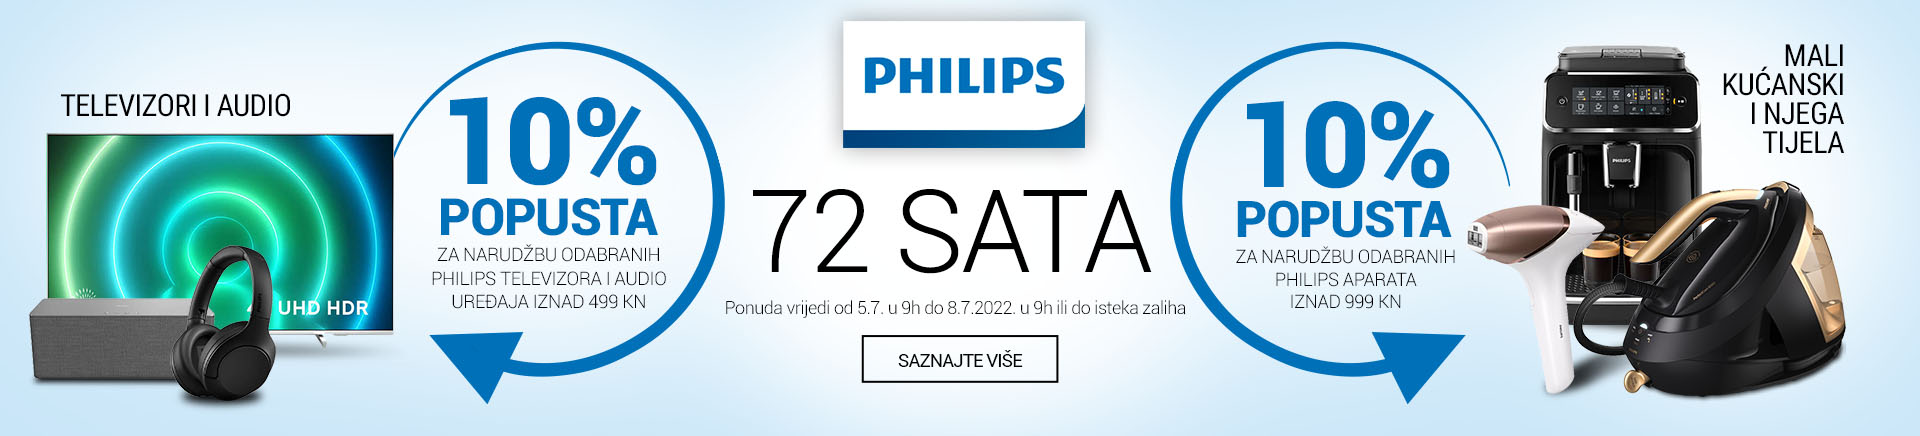 72 sata Philips aparata, televizora i audio opreme: 10% popusta